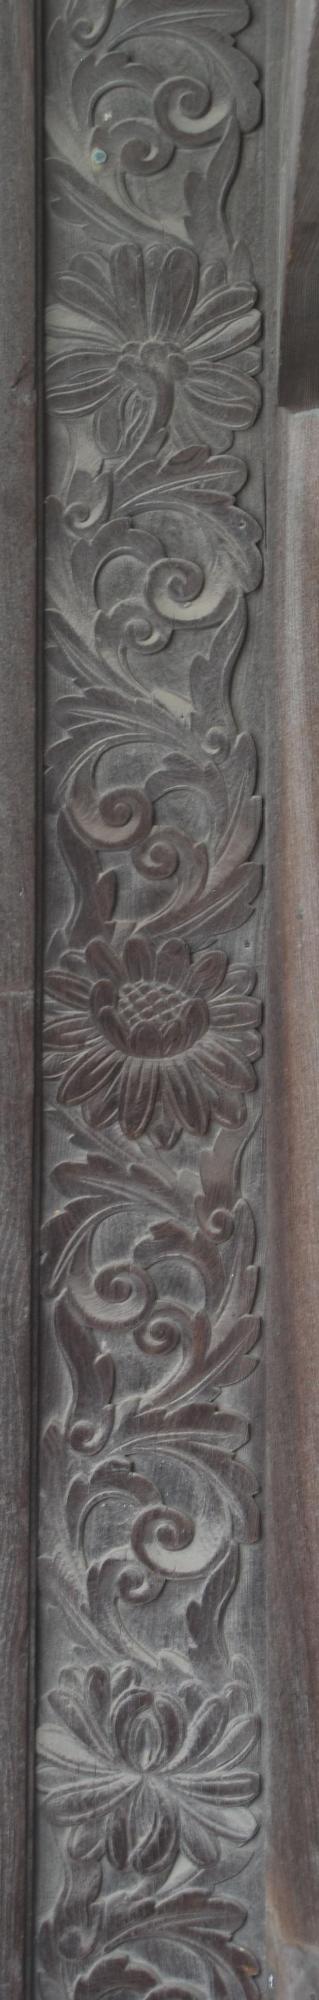 大扉脇の菊と唐草の彫刻の写真